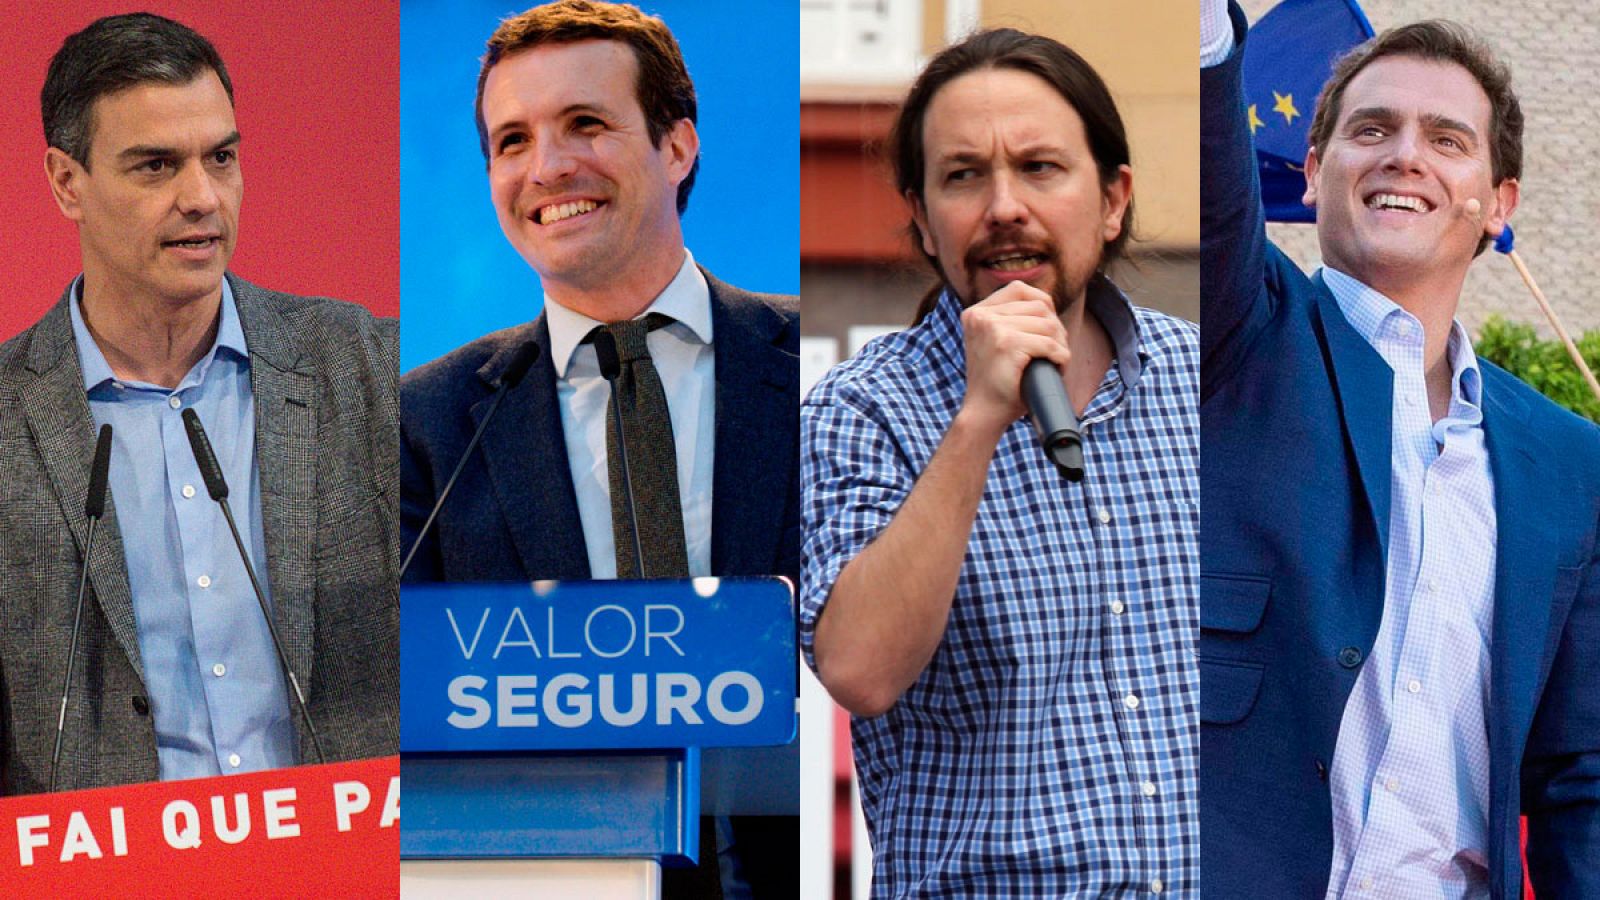 Elecciones generales - Los candidatos se encierra para preparar el debate a cuatro - RTVE.es